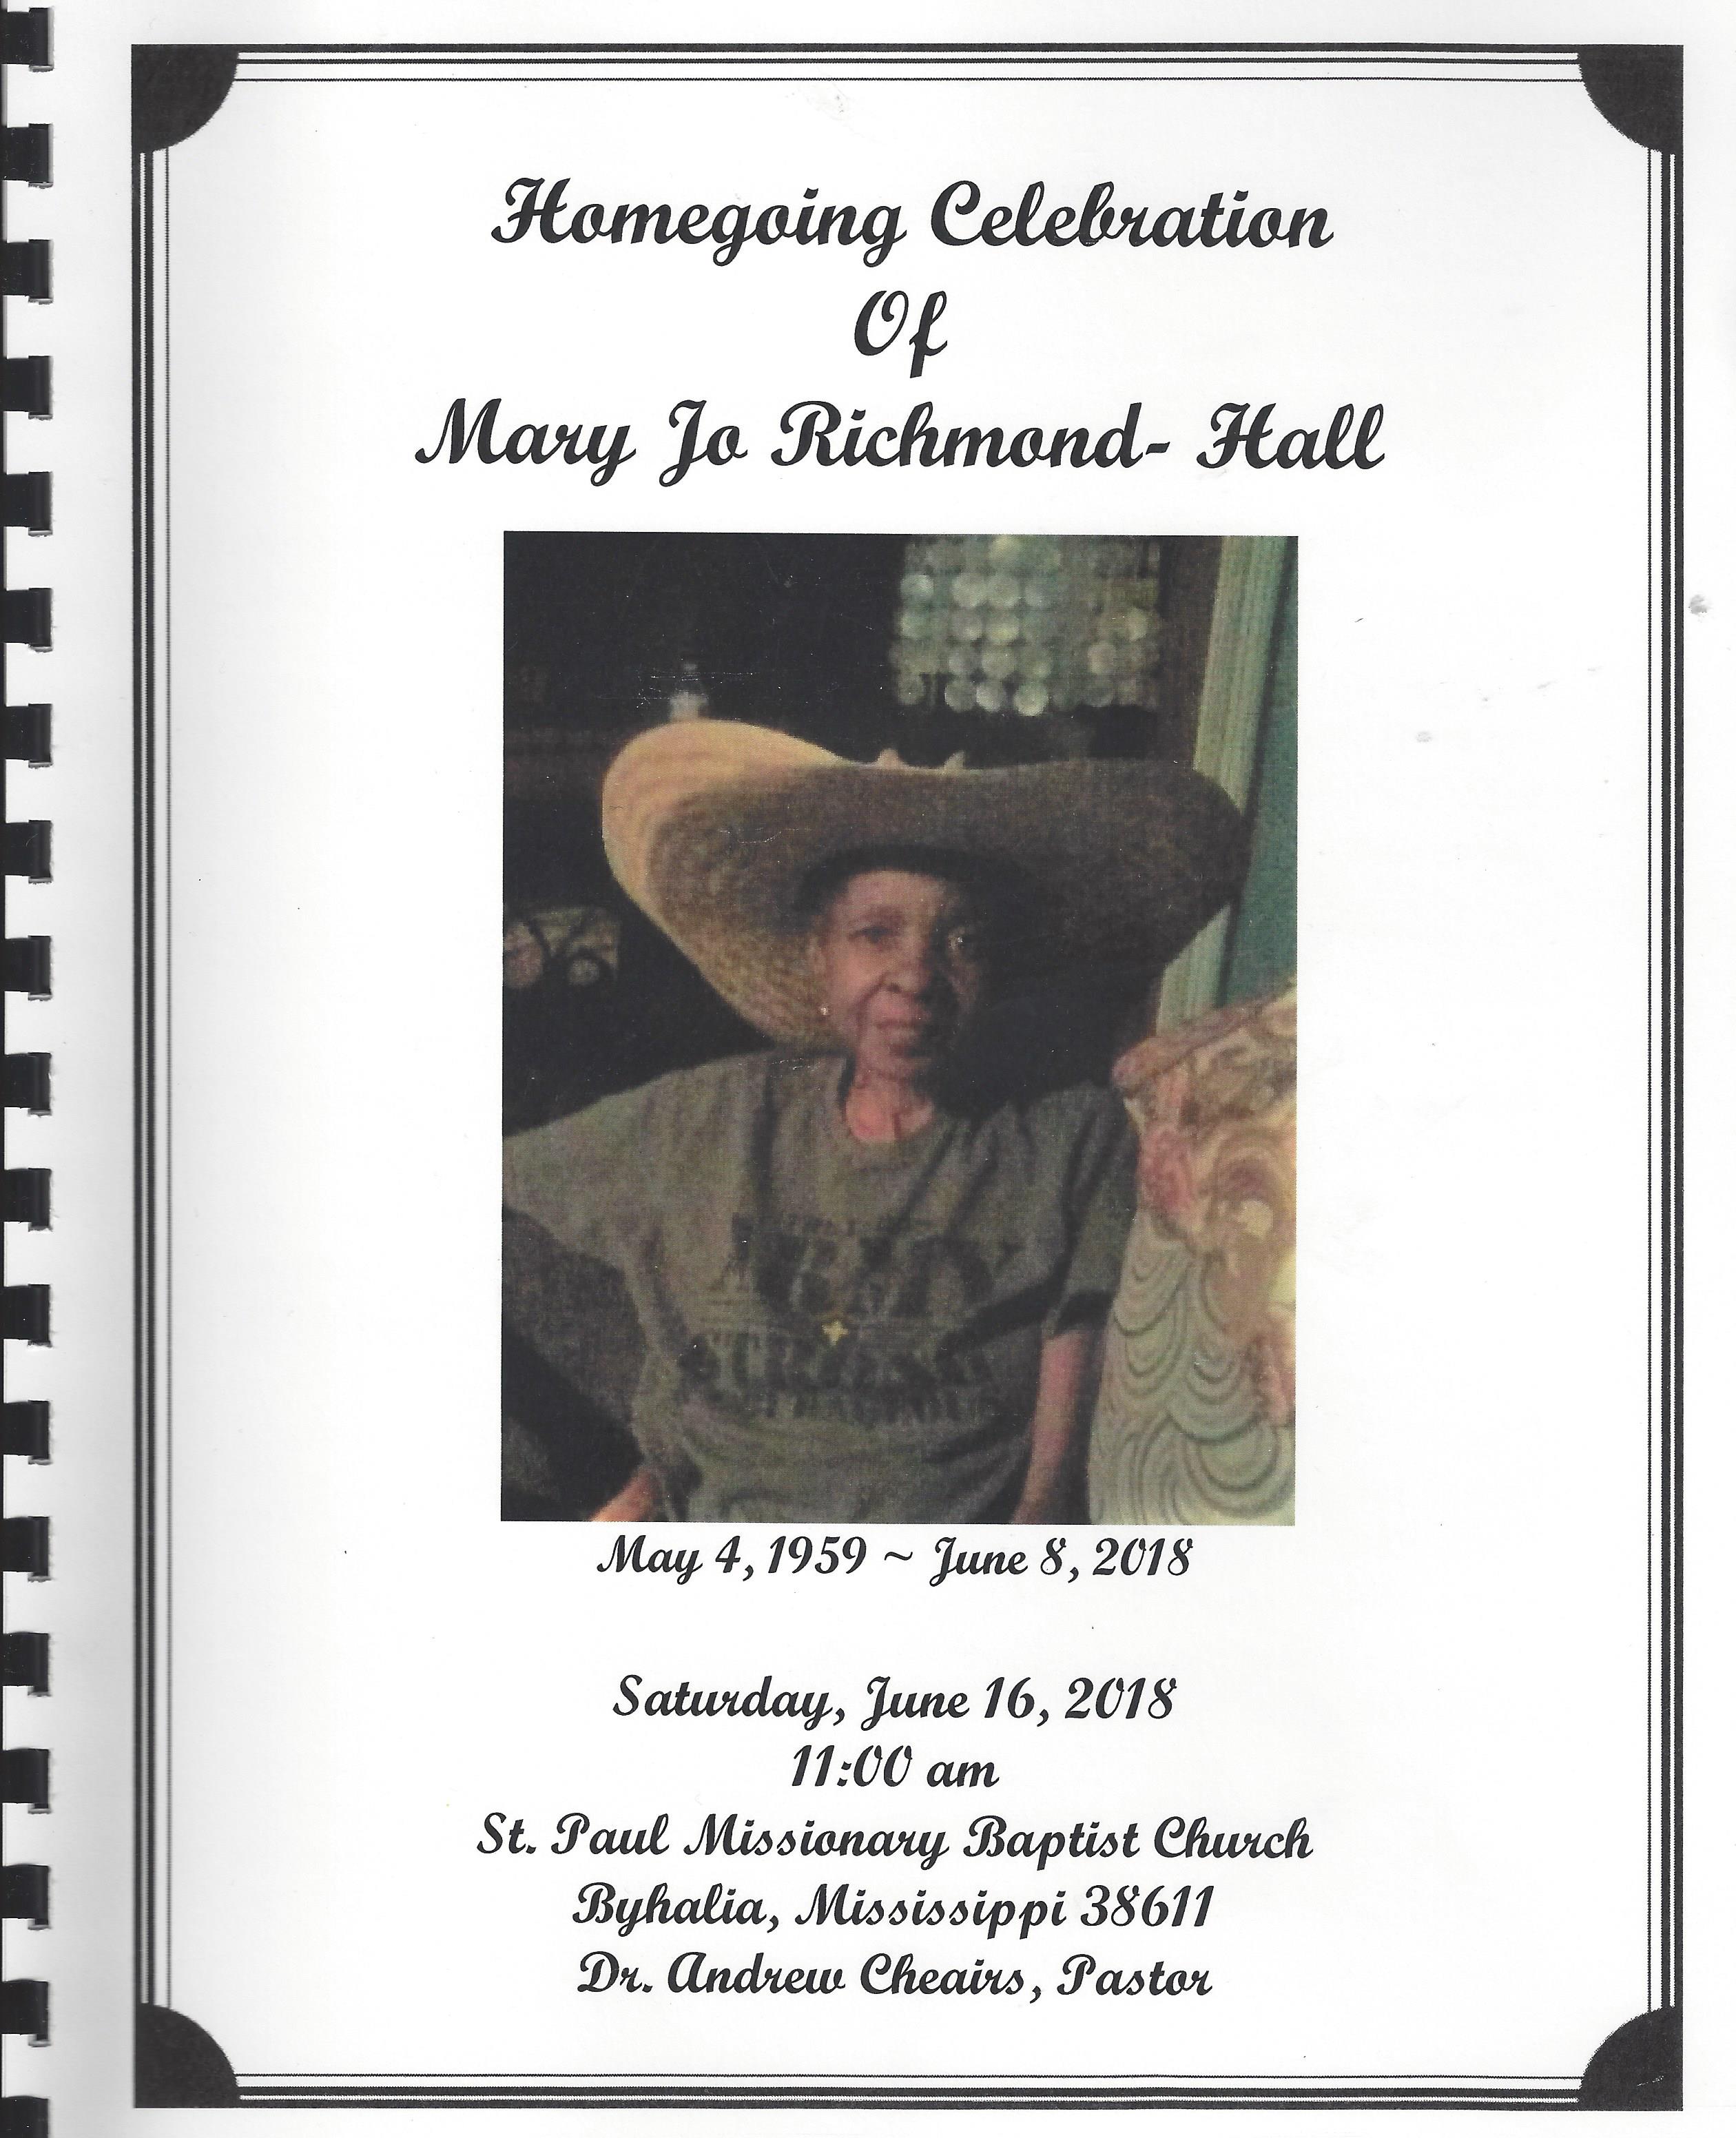 Mary Jo Richmond-Hall